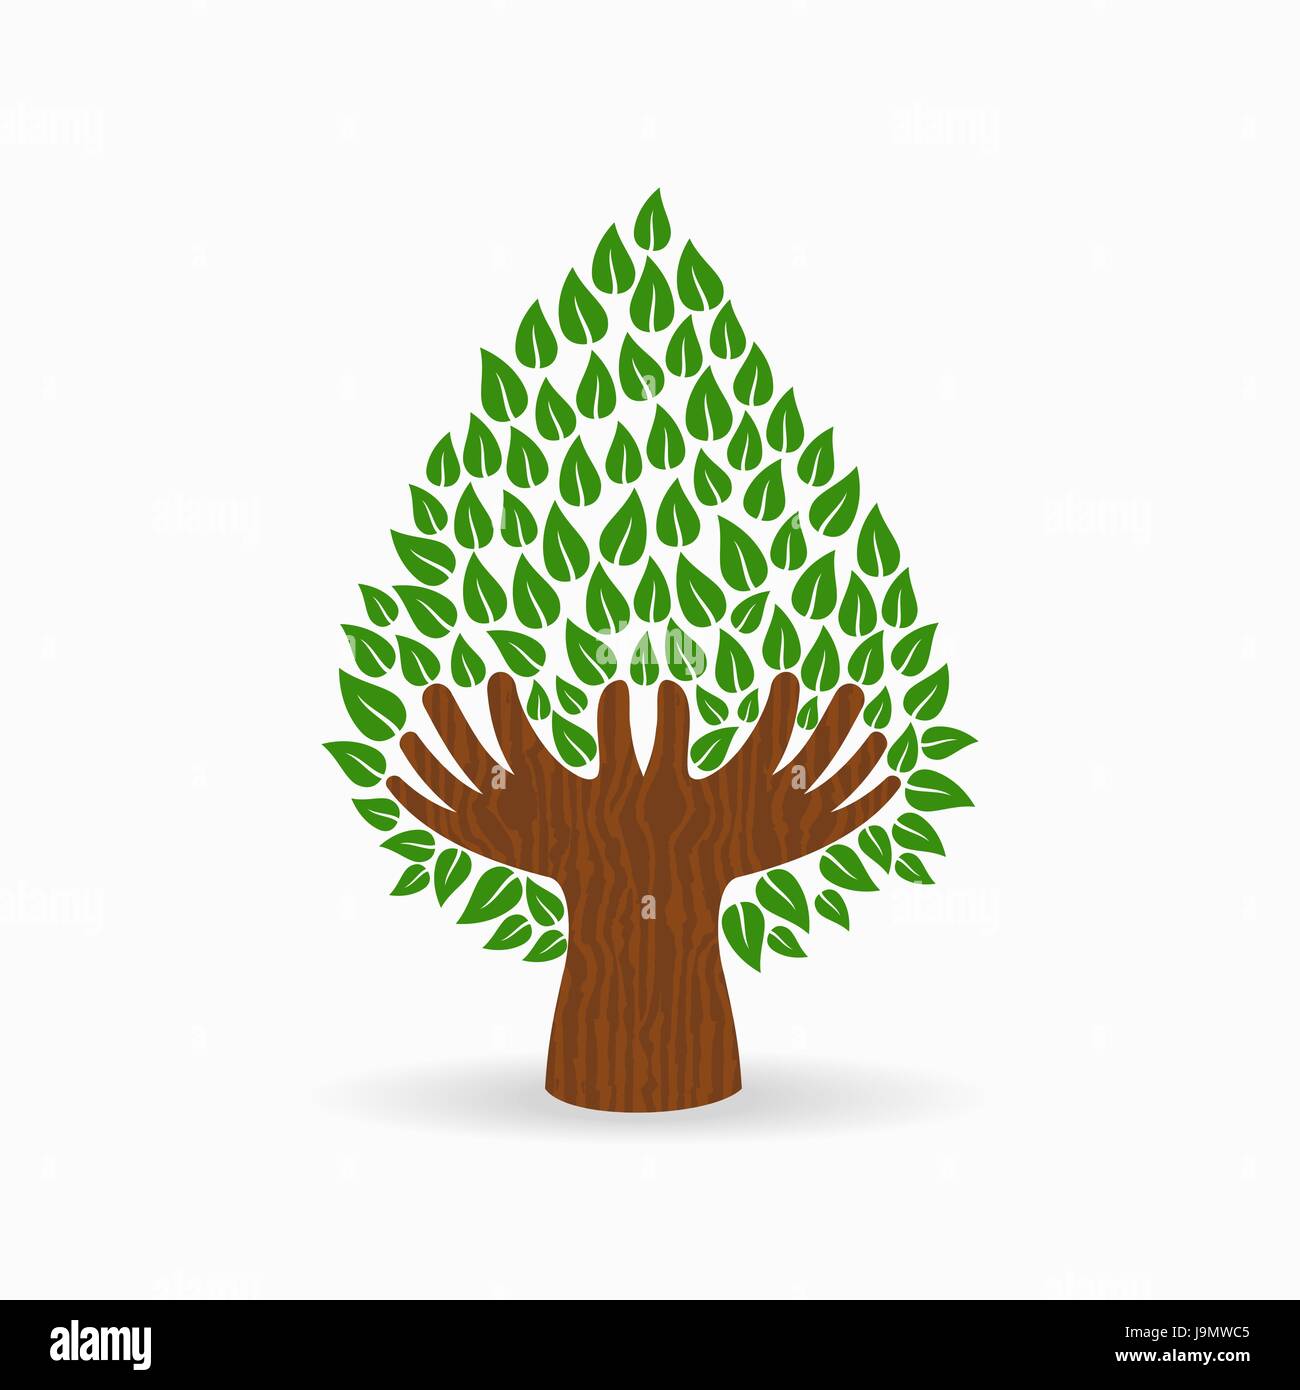 Grüner Baum-Symbol mit menschlichen Händen. Konzept-Illustration für Organisation Hilfe, Umweltprojekt oder Sozialarbeit. EPS10 Vektor. Stock Vektor